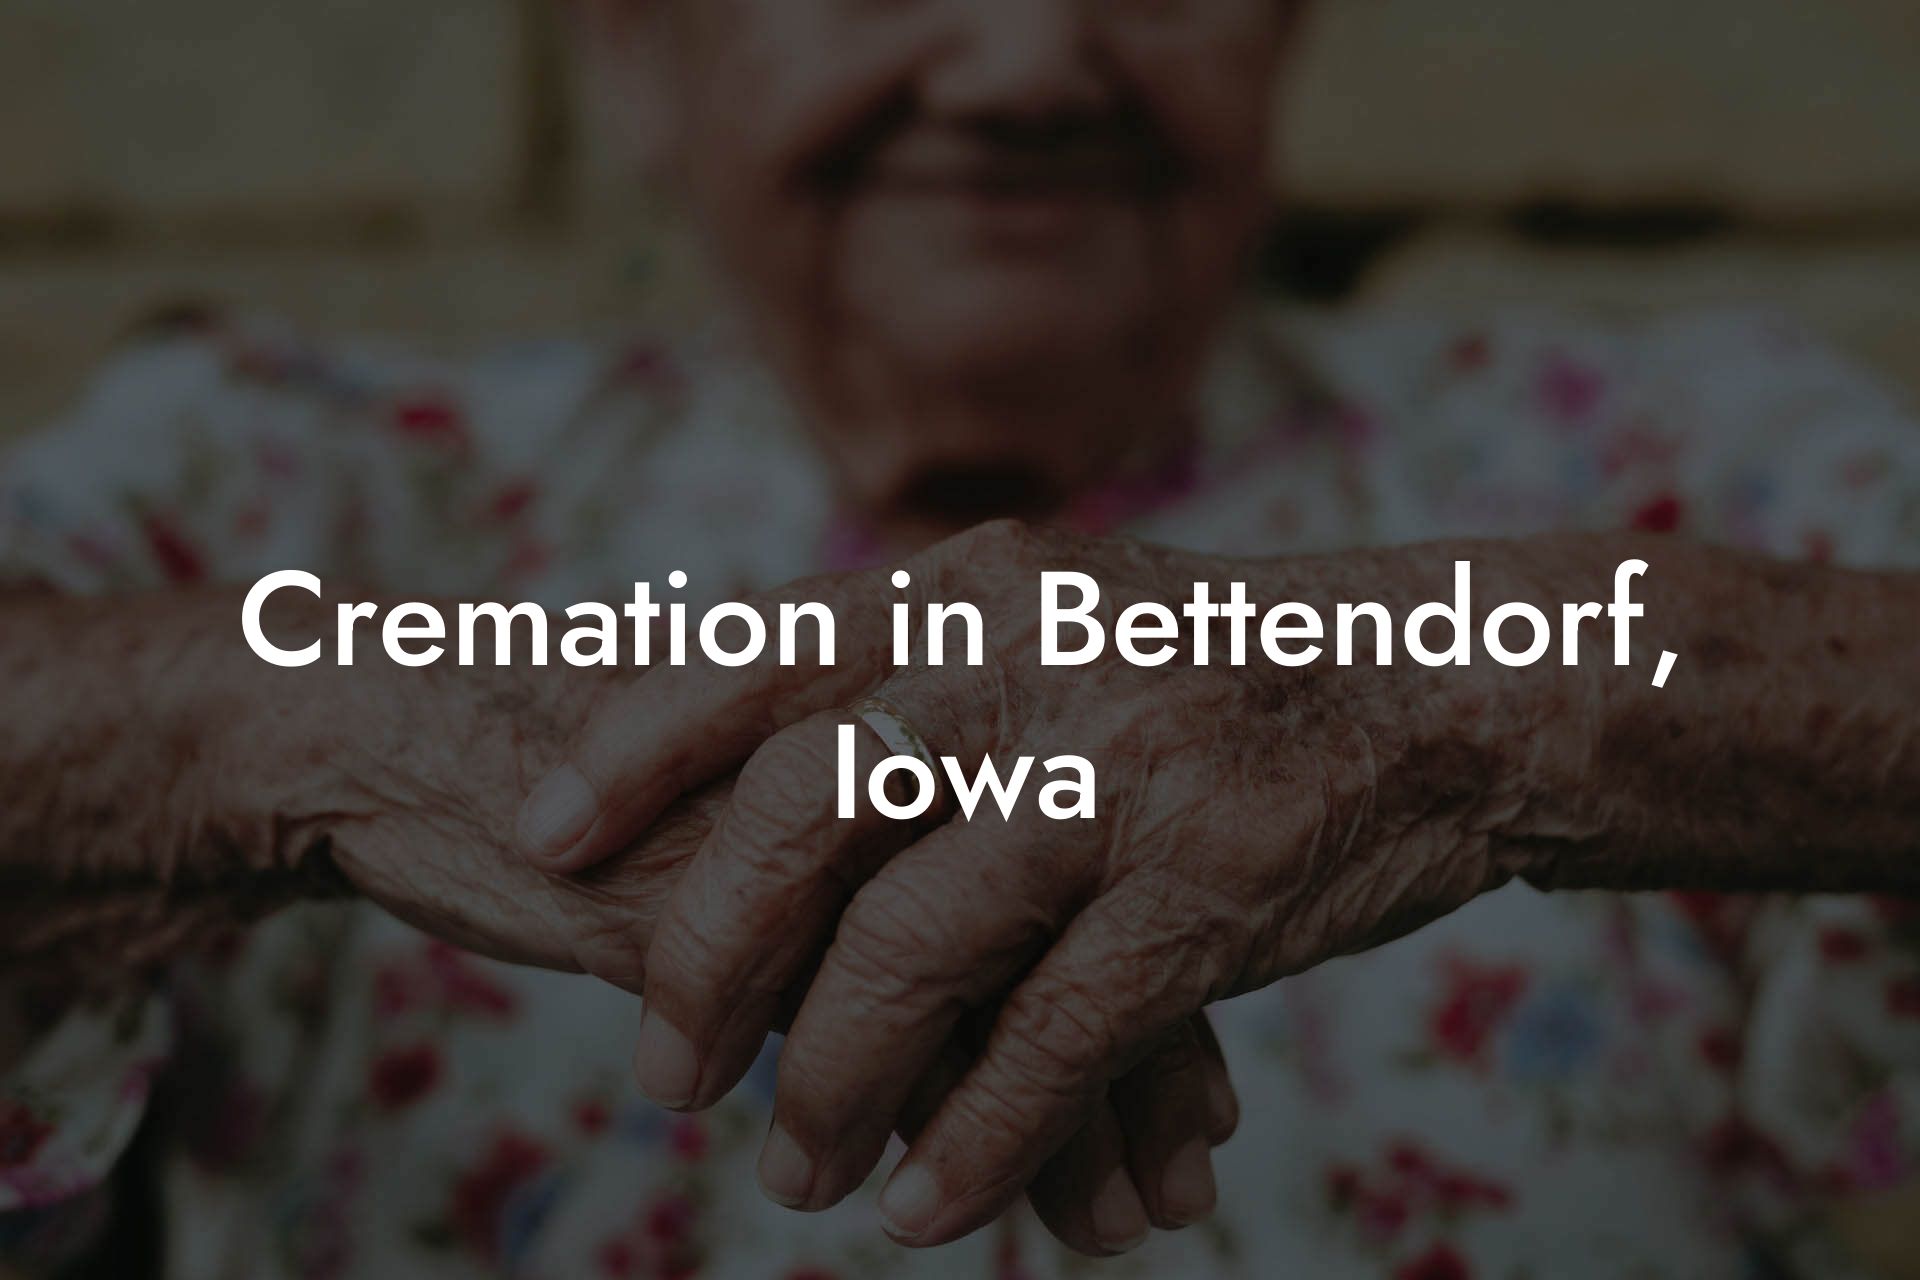 Cremation in Bettendorf, Iowa